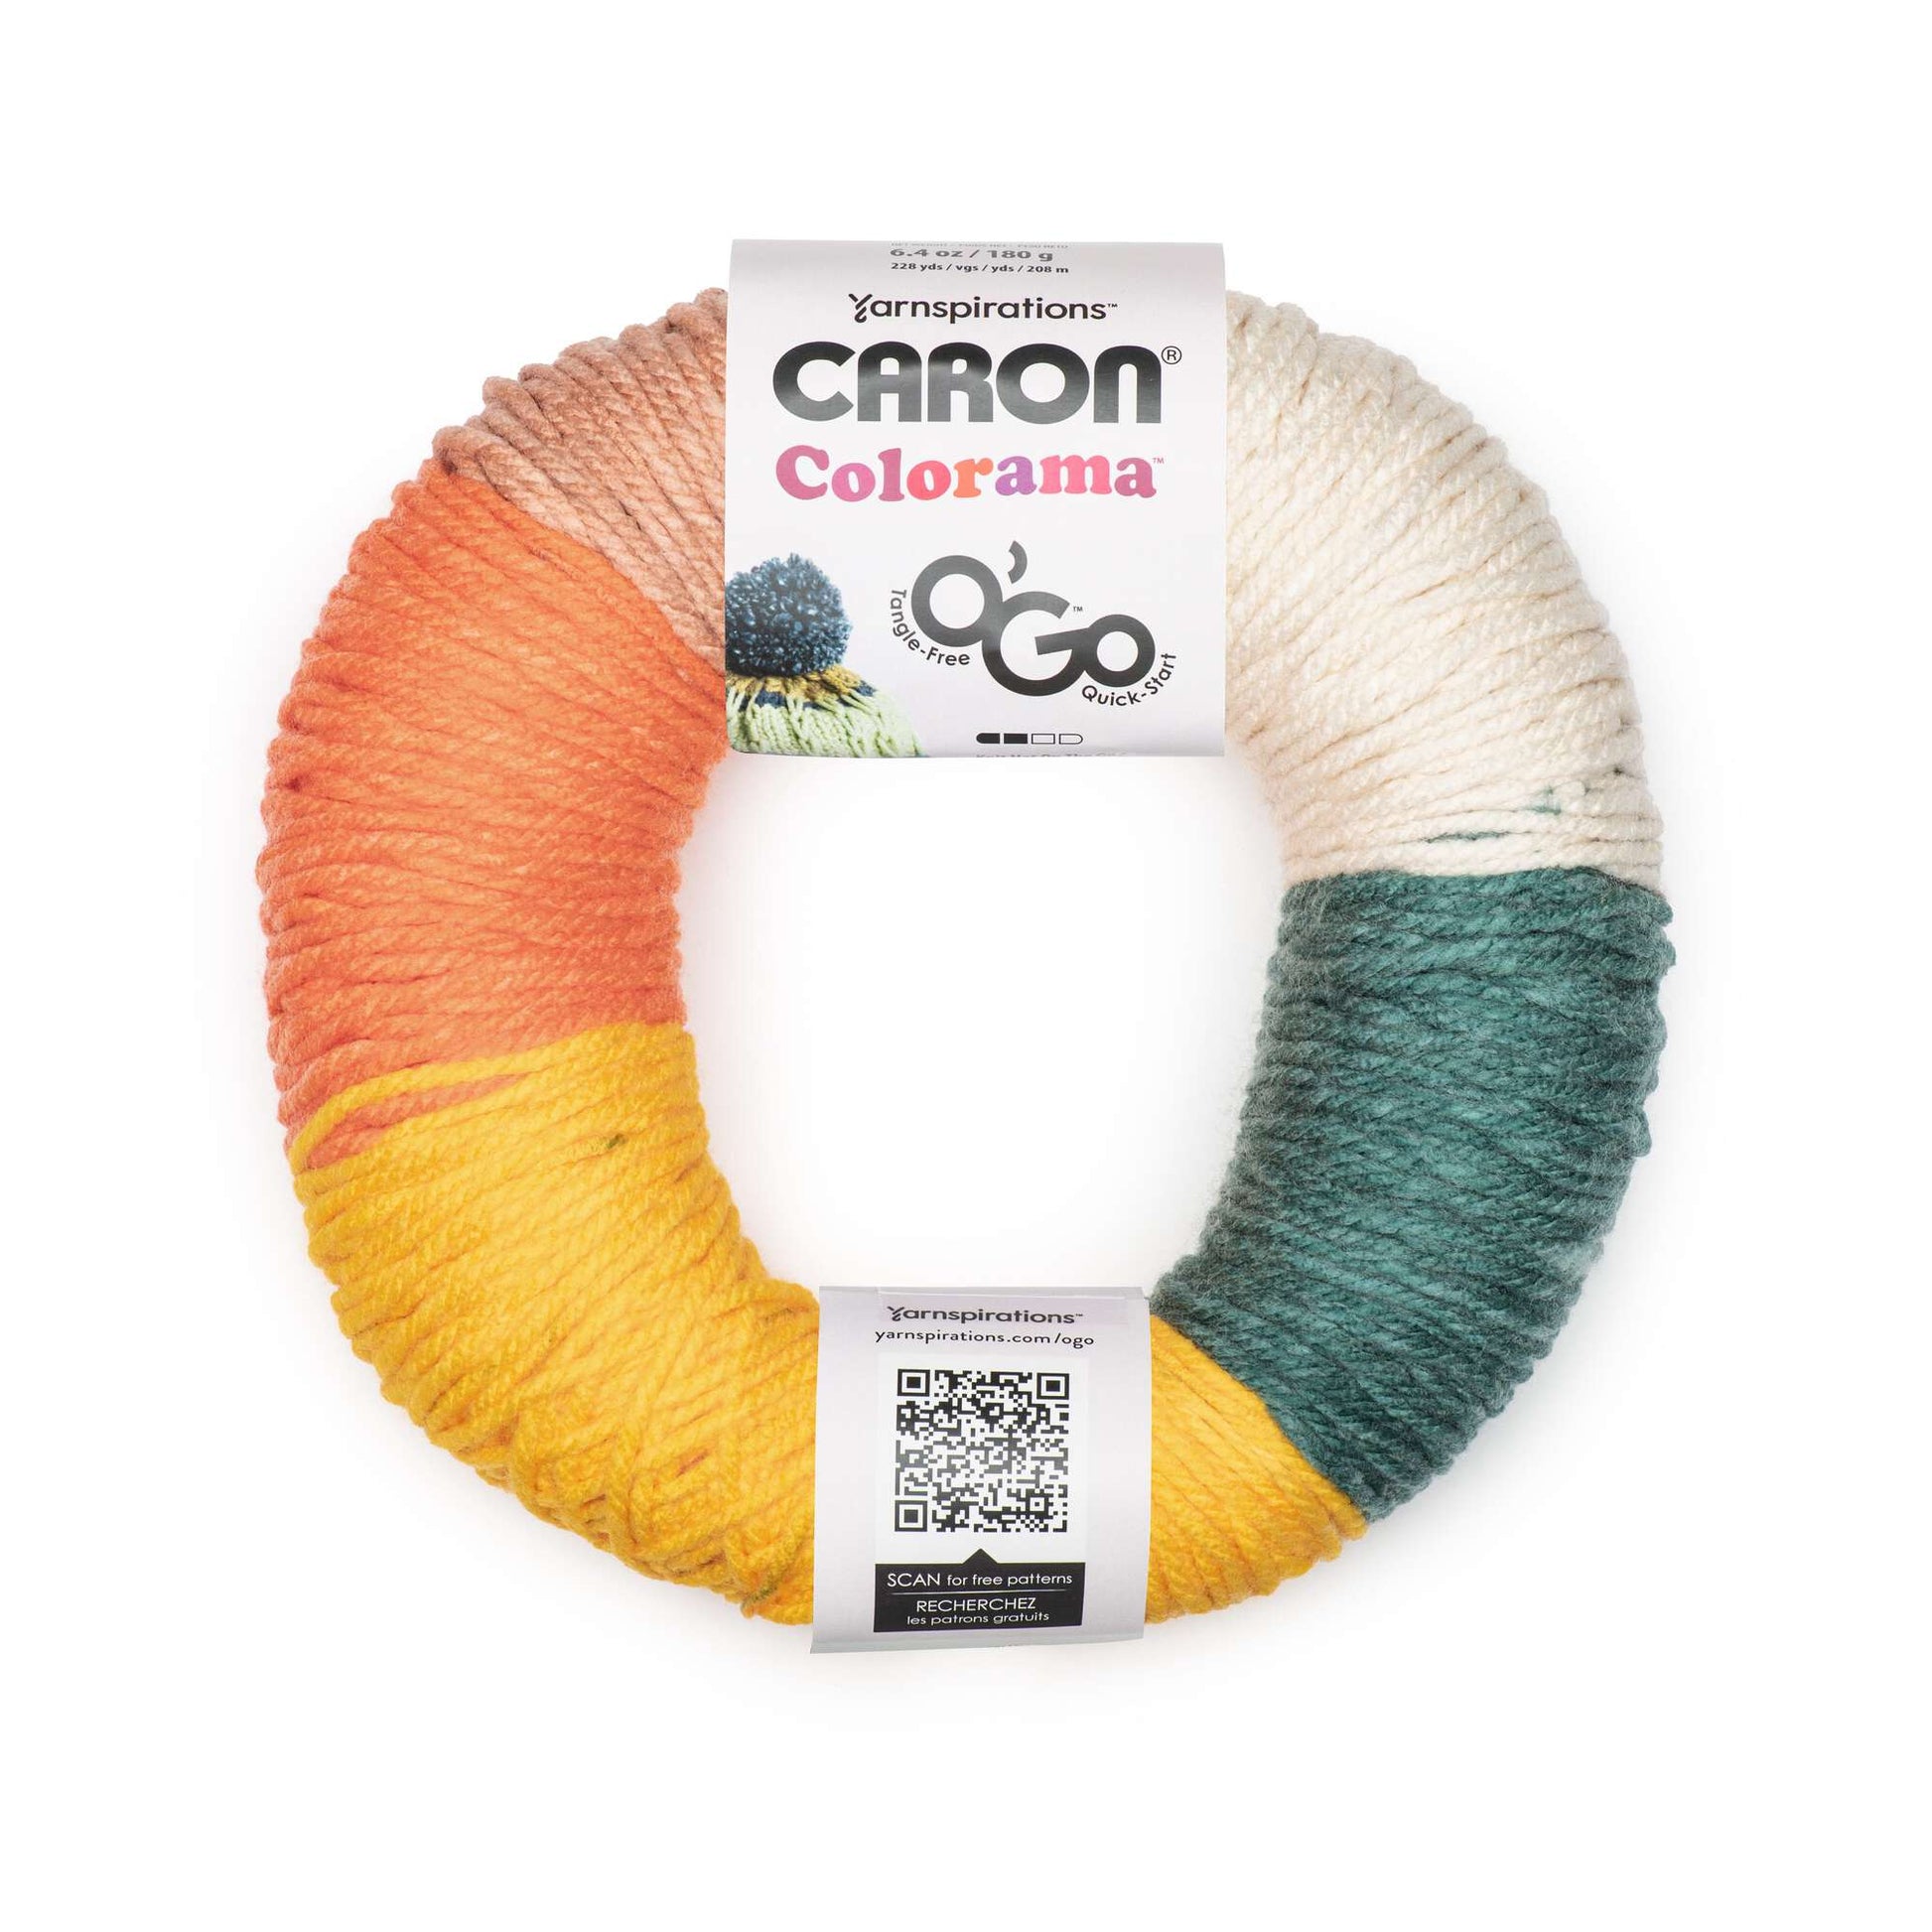 Caron Colorama O'Go Yarn - Clearance Shades*